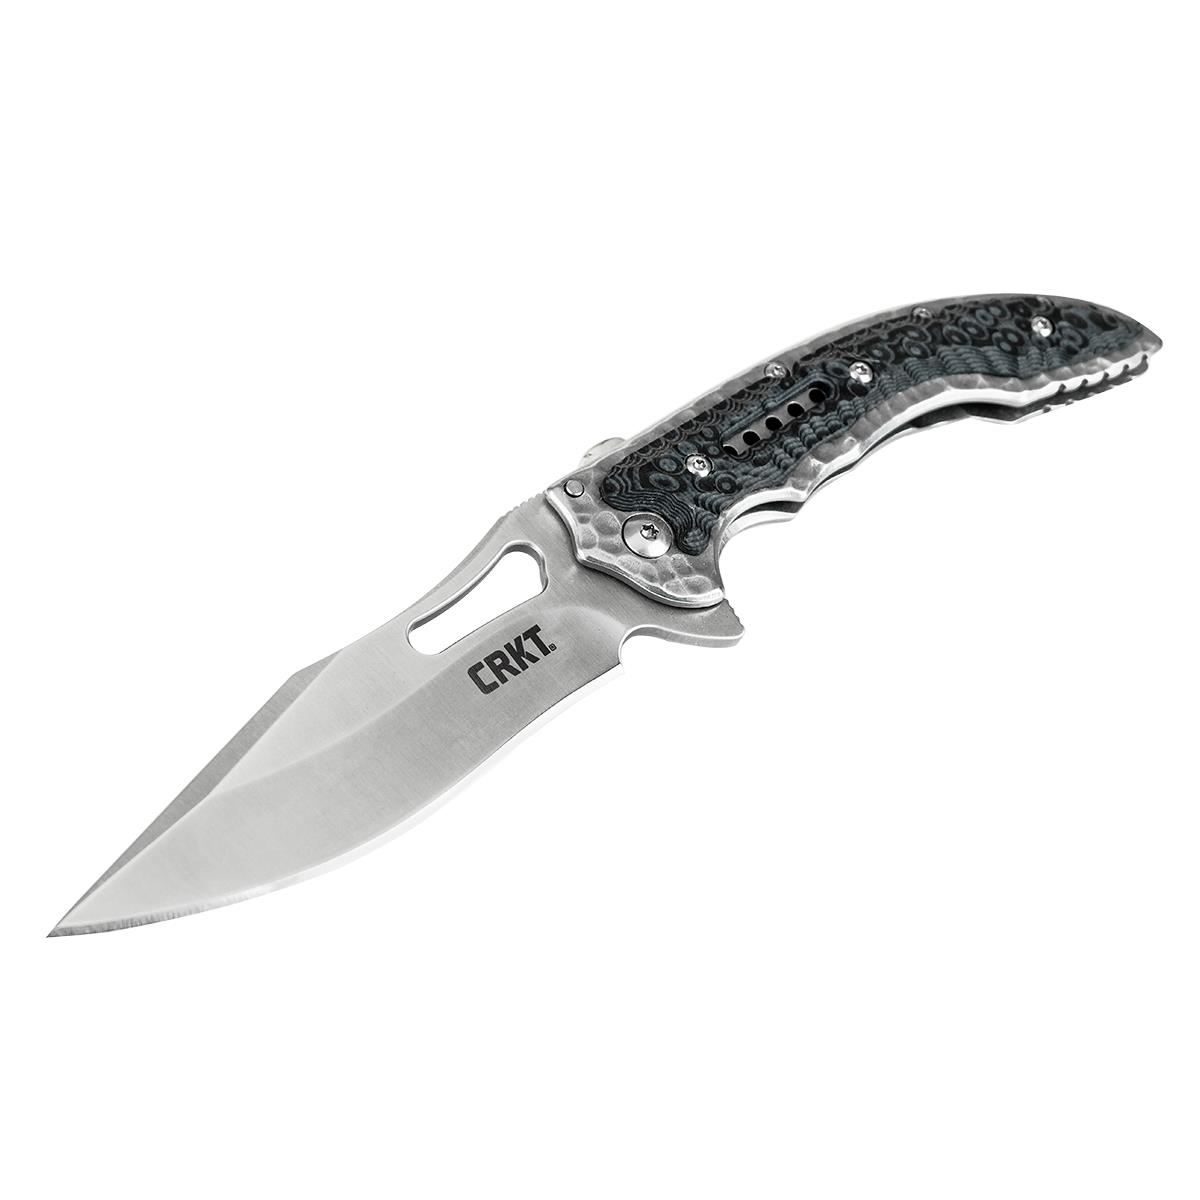 Нож Fossi складной, рук-ть сталь/G10, клинок 8Cr13MoV CRKT_5462 нож танто складной